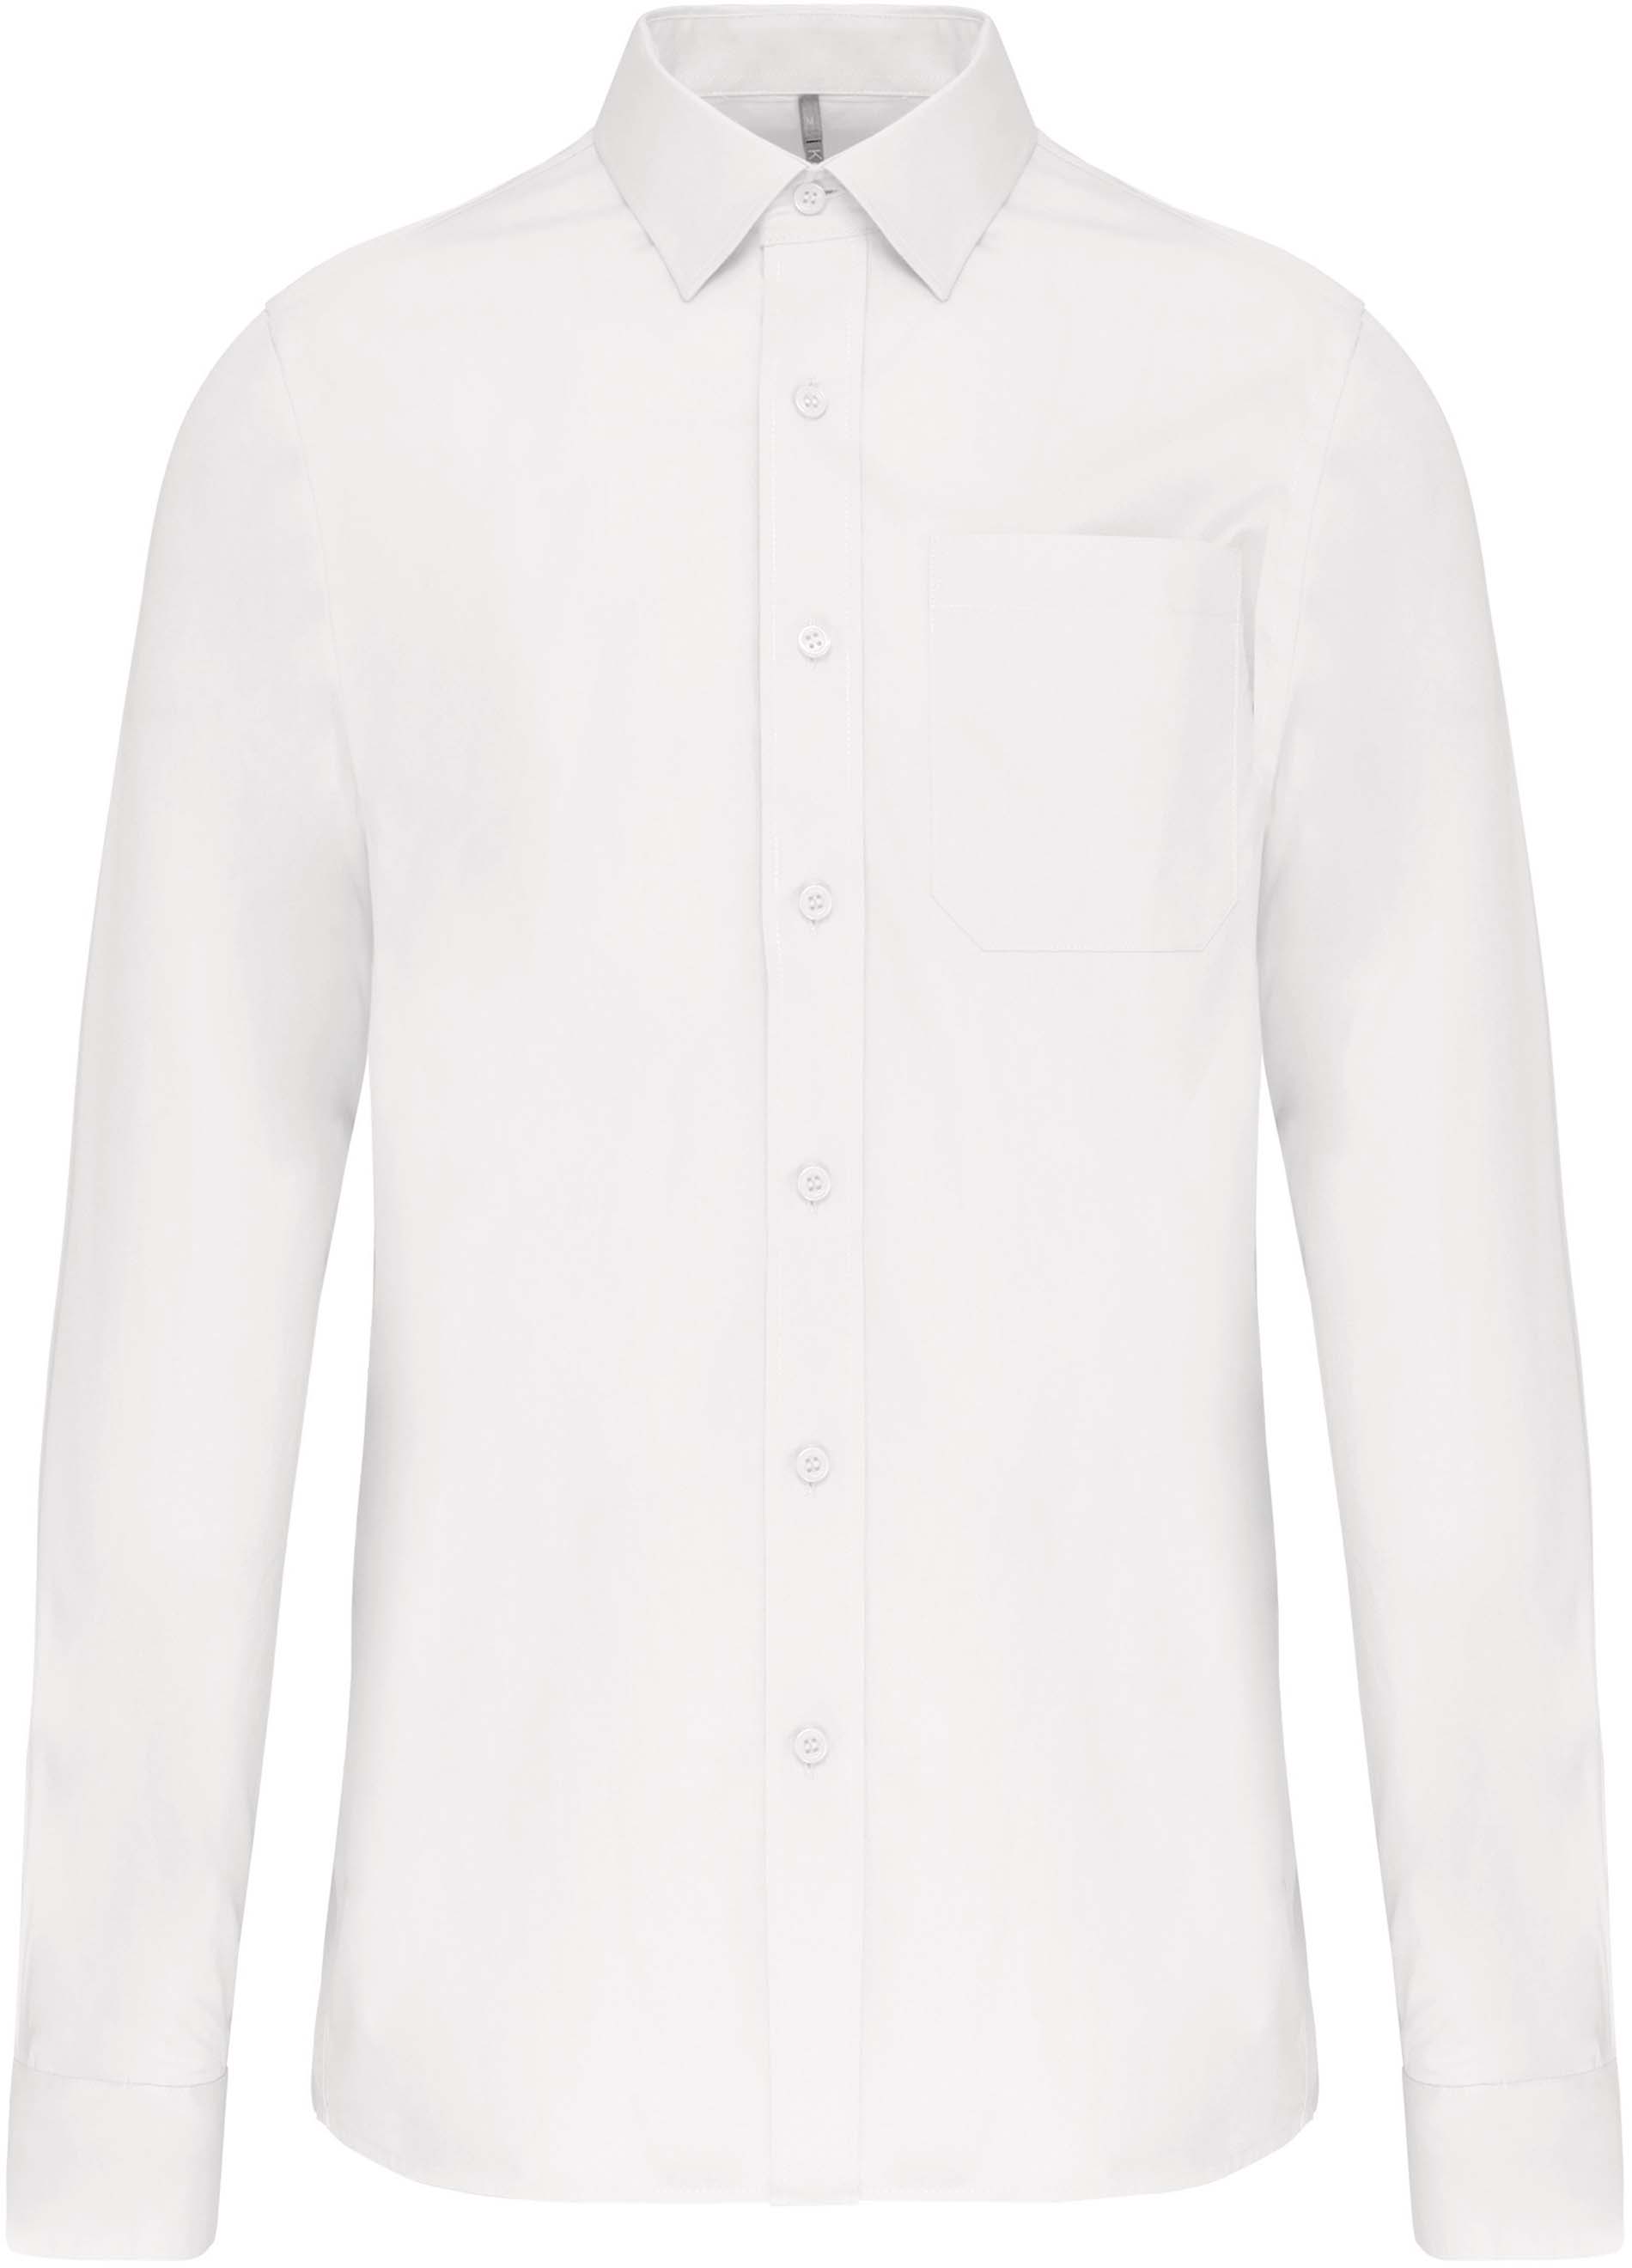 Pánská košile s dlouhým rukávem Velikost: 4XL, Barva: white, Rozměr: 86,50/72